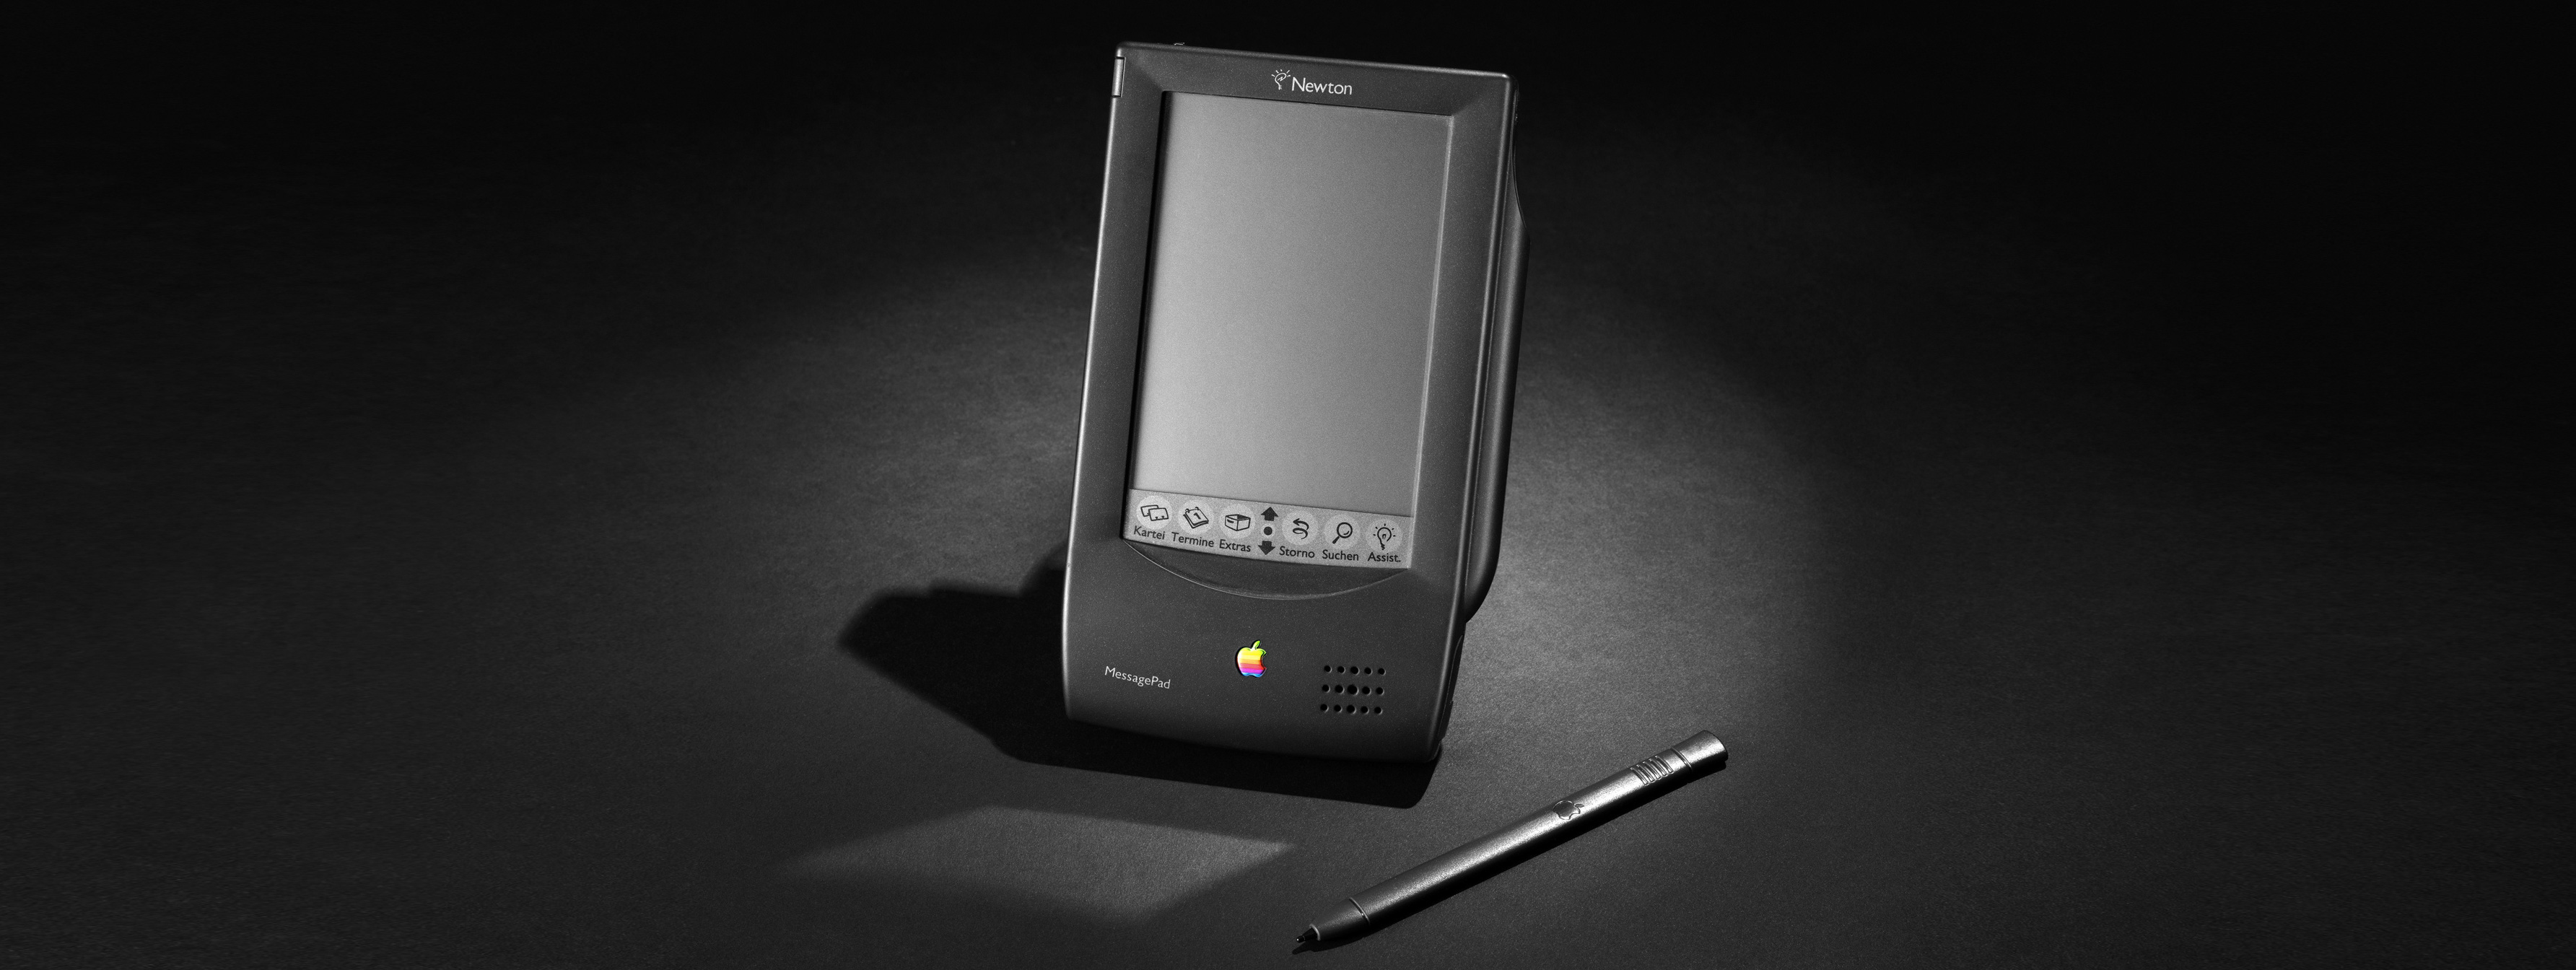 Newton MessagePad 100, circa 1993